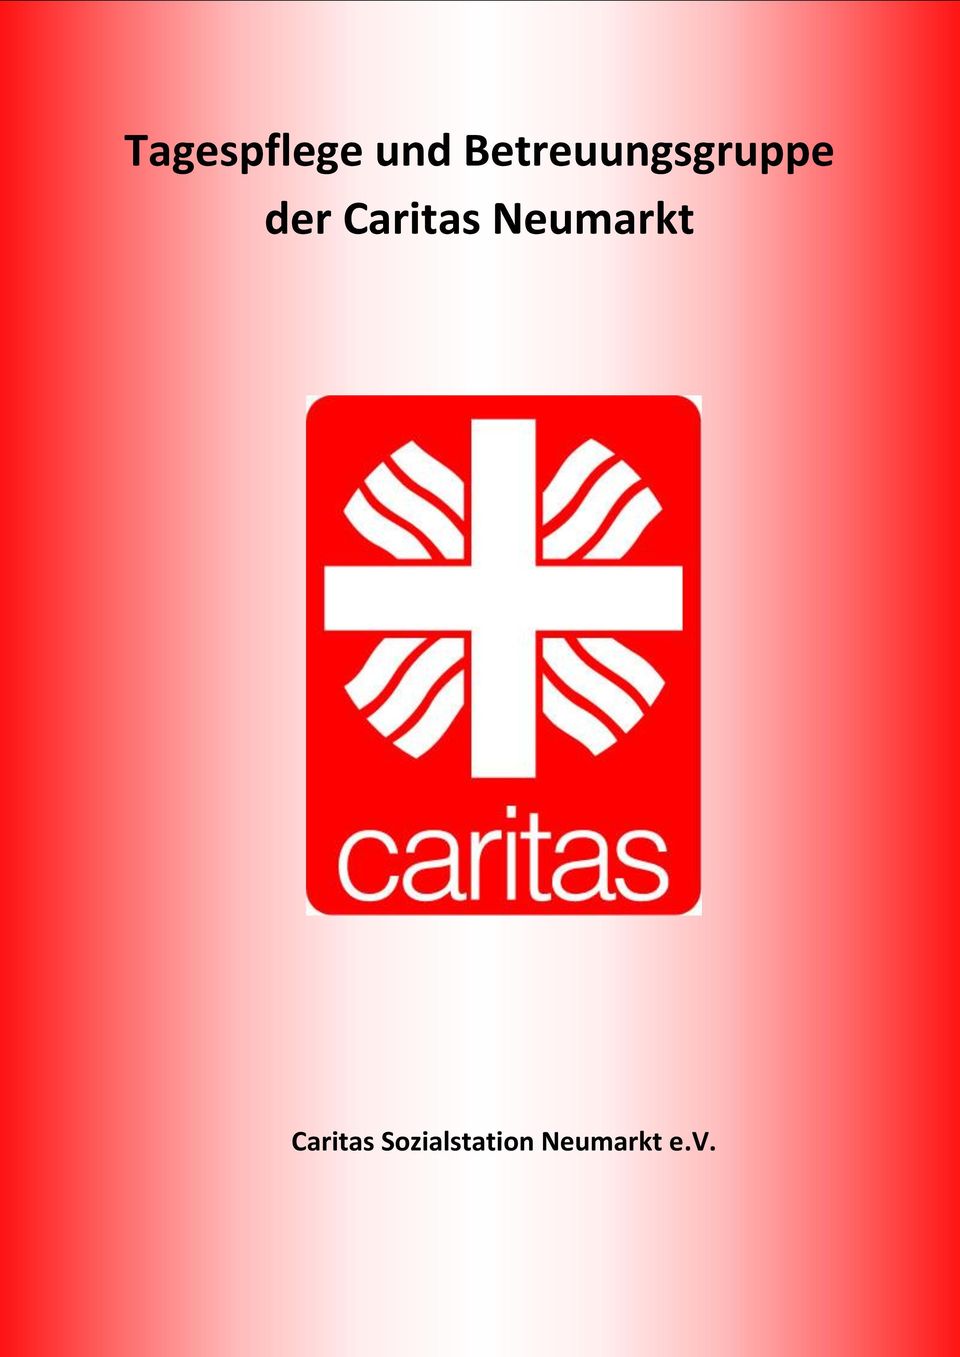 Caritas Neumarkt